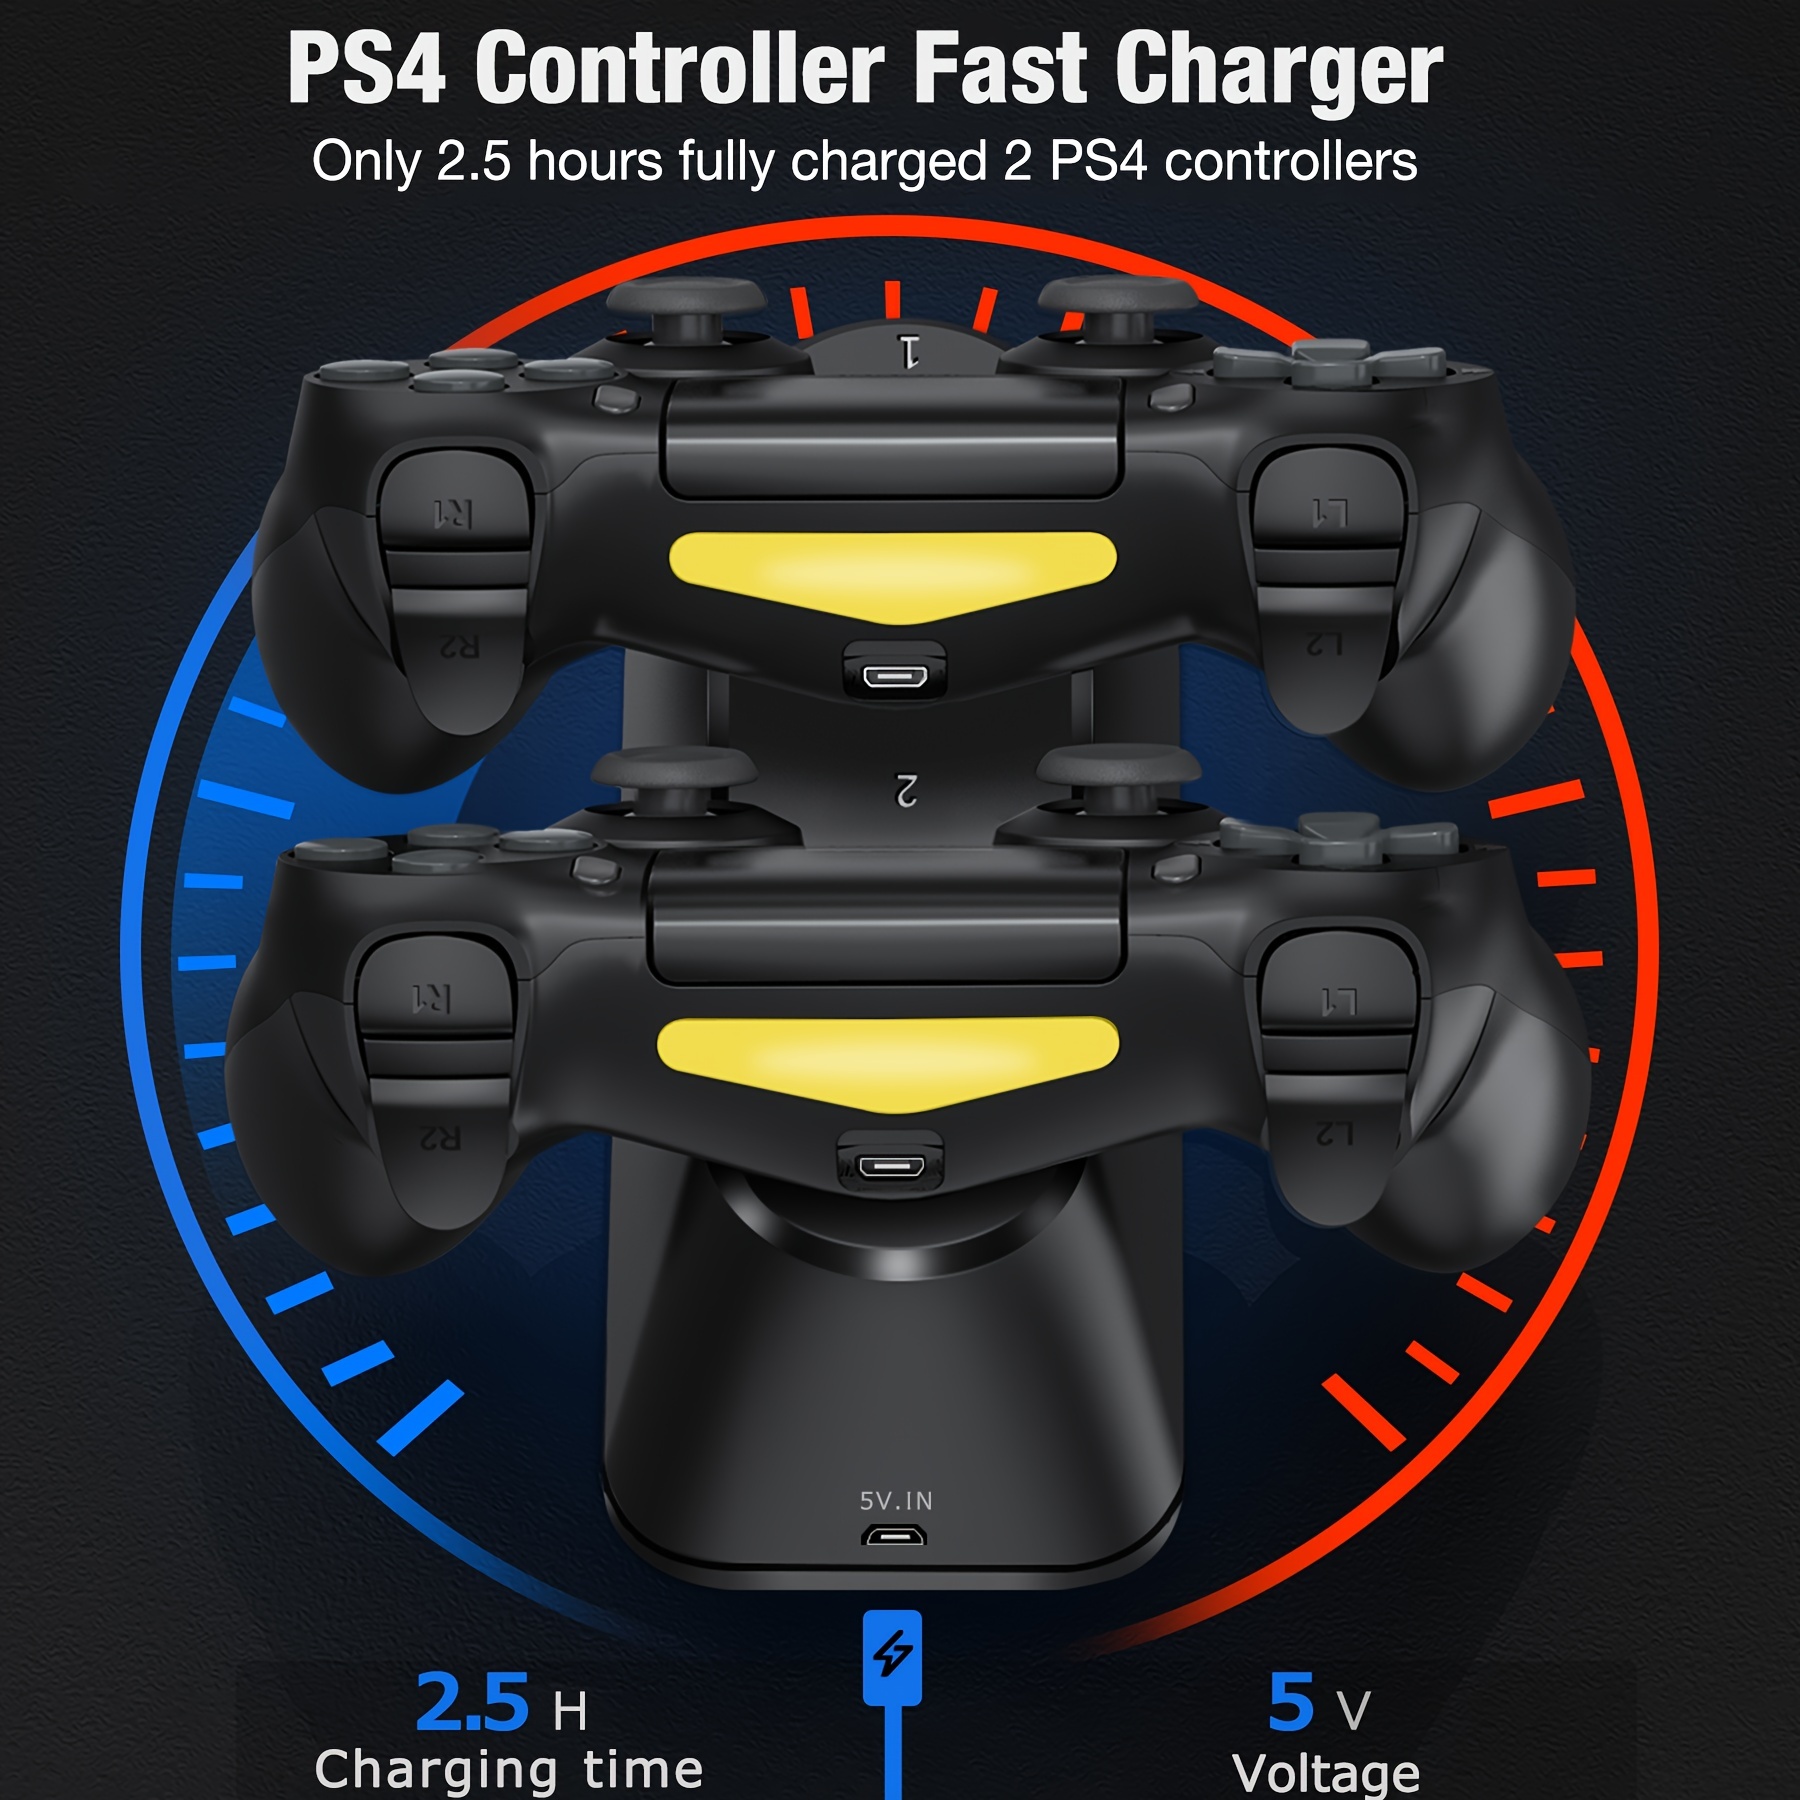 Sûr et fiable avec 2 ports de charge pour manette PS4/PS4 Slim/PS4 Pro